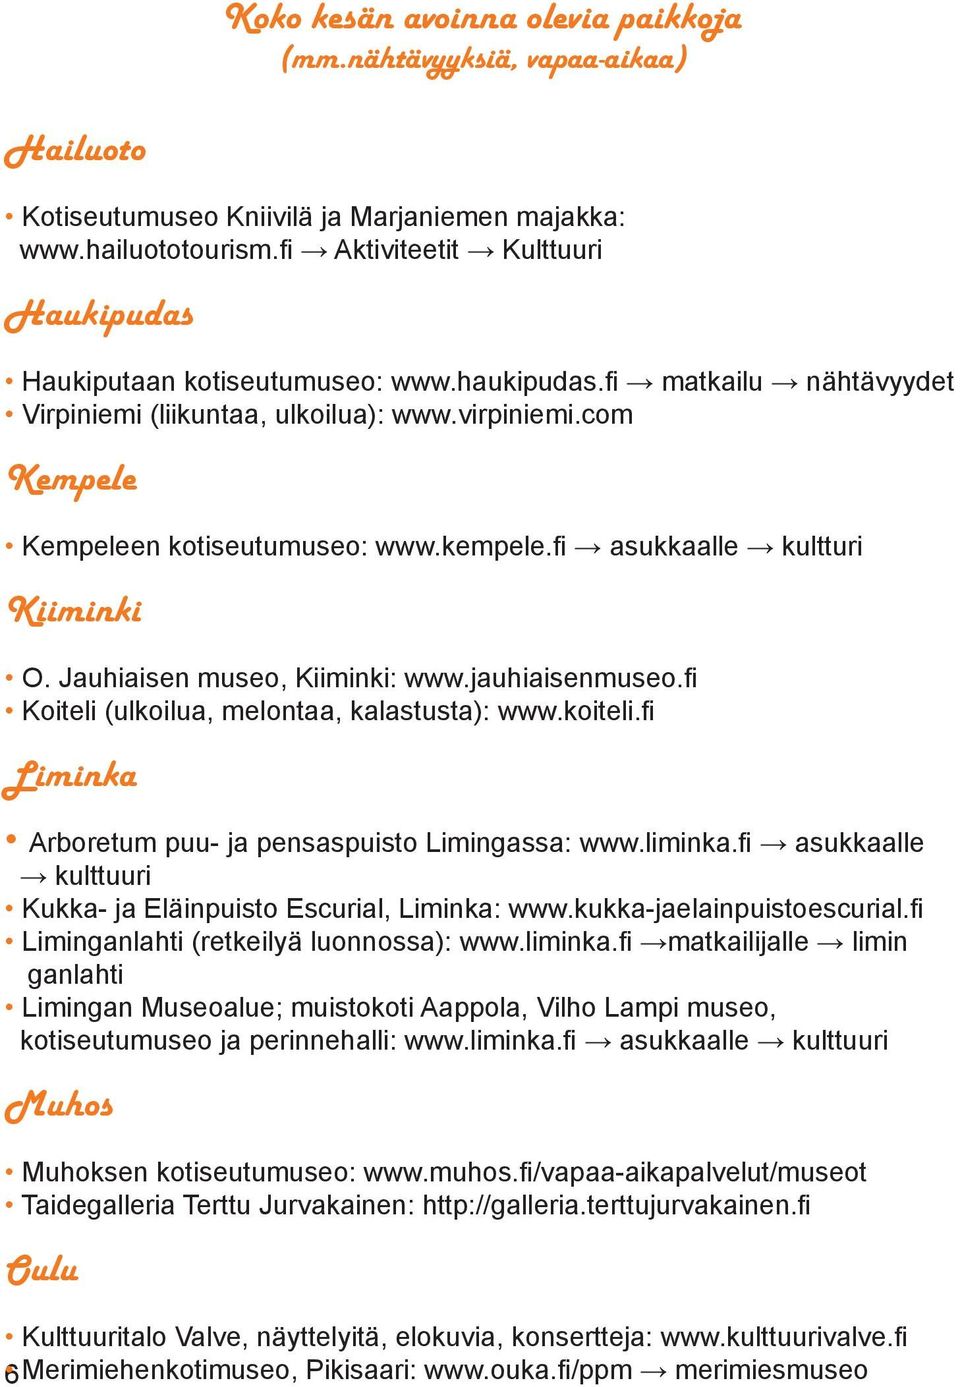 kempele.fi asukkaalle kultturi Kiiminki O. Jauhiaisen museo, Kiiminki: www.jauhiaisenmuseo.fi Koiteli (ulkoilua, melontaa, kalastusta): www.koiteli.